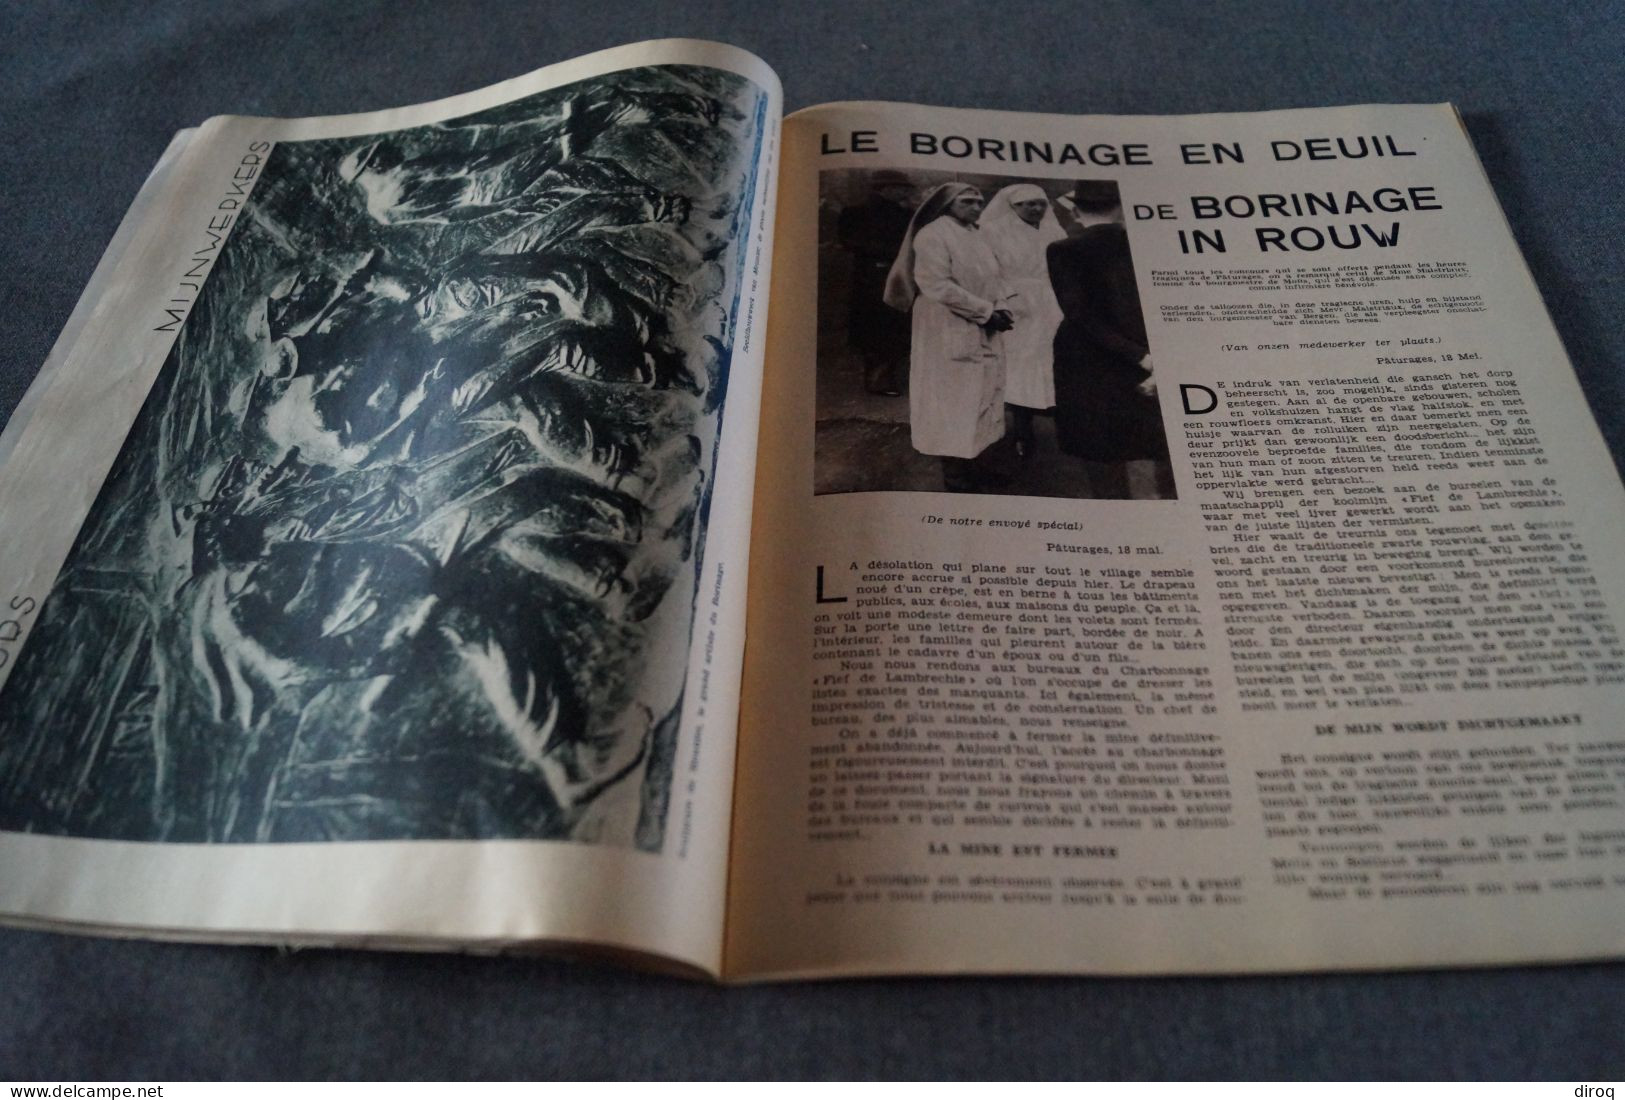 important lot,Photos,indentité,décès,revue,mine,mineurs,accident à Paturage,1934,48 pages,27,5 Cm./22 Cm.